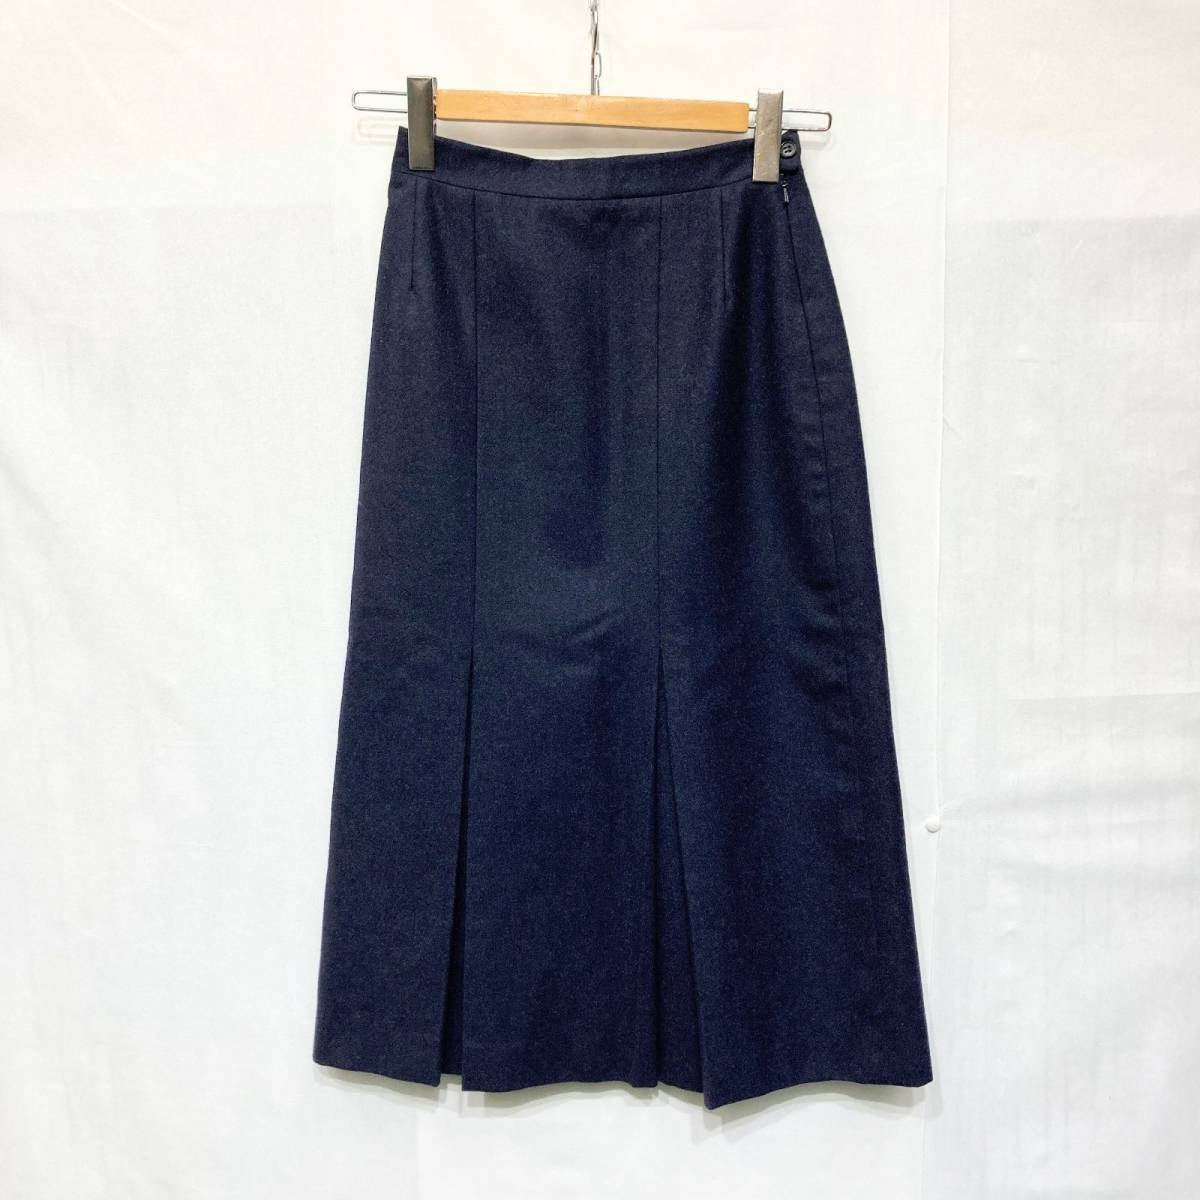 BURBERRYS Burberry длинная юбка одноцветный темно-синий размер 40 шерсть подкладка искусственный шелк OLD б/у одежда VINTAGE